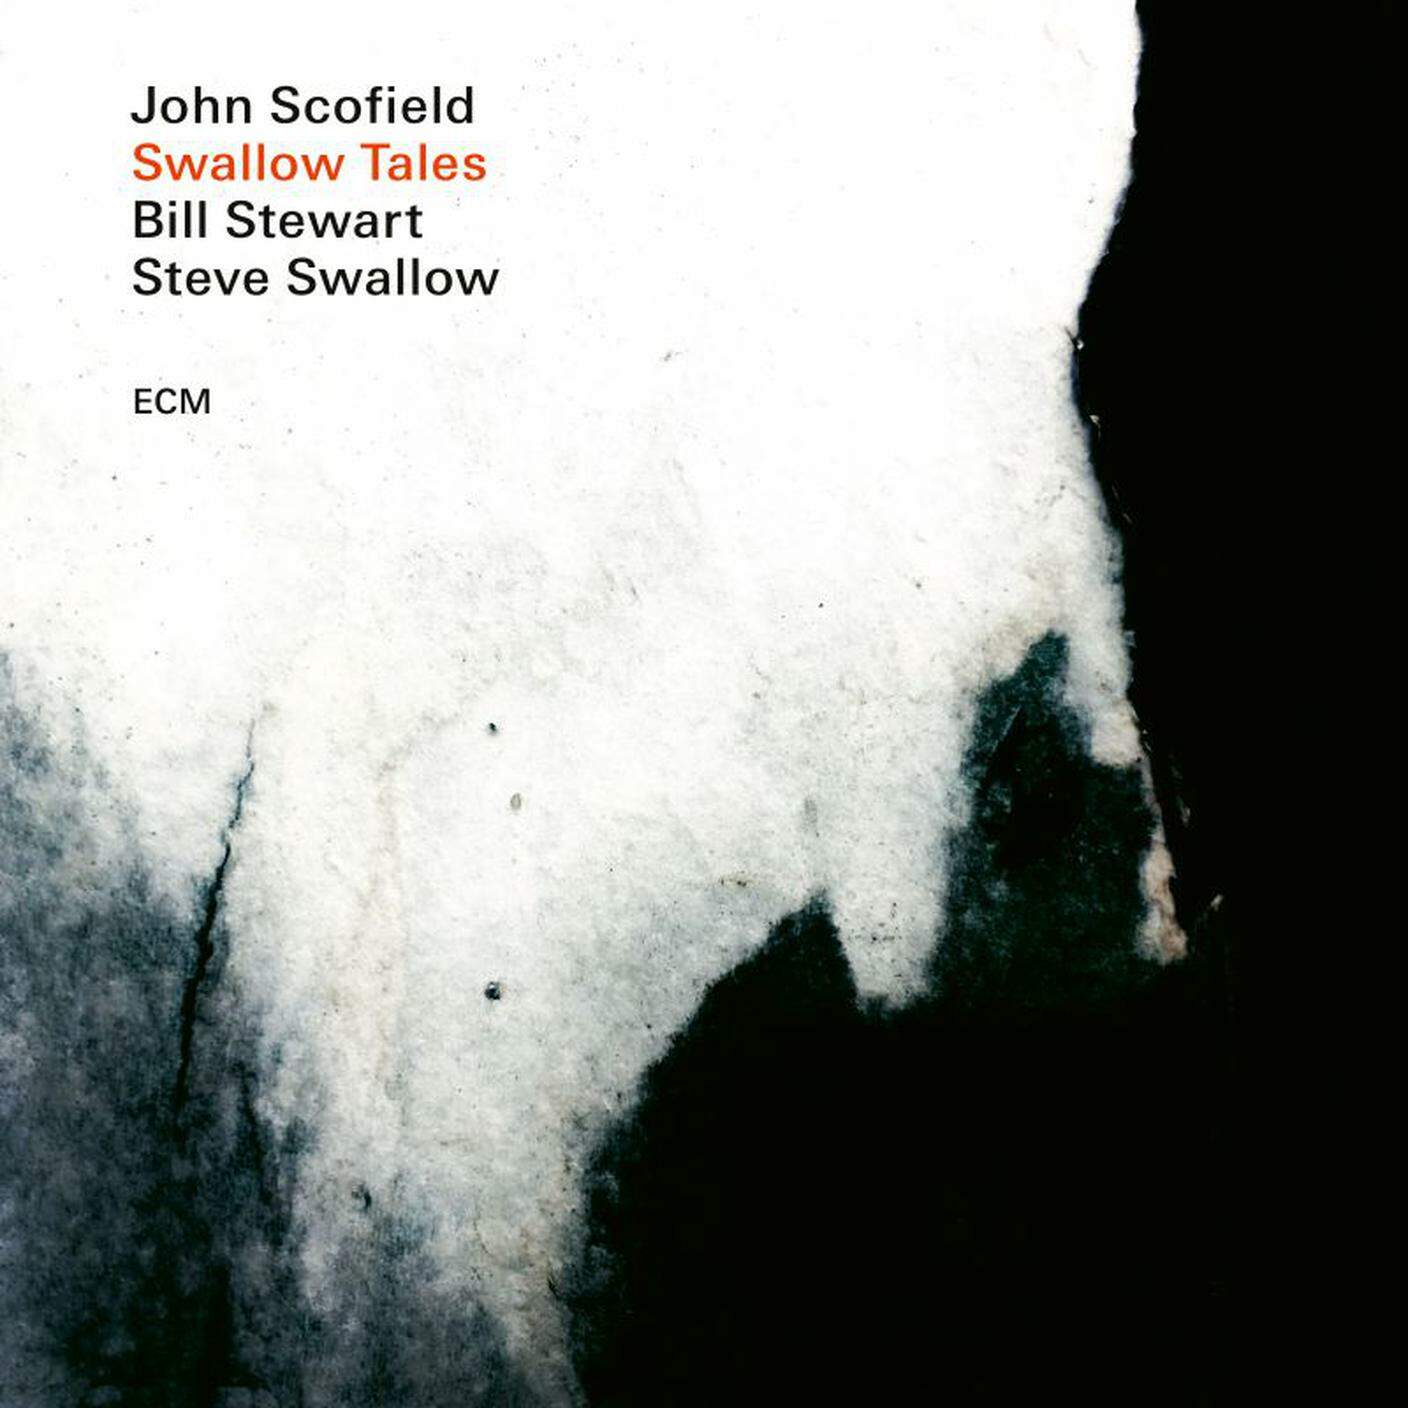 “Swallow Tales” di John Scofield, Steve Swallow, Bill Stewart; ECM, 2020 (dettaglio copertina)